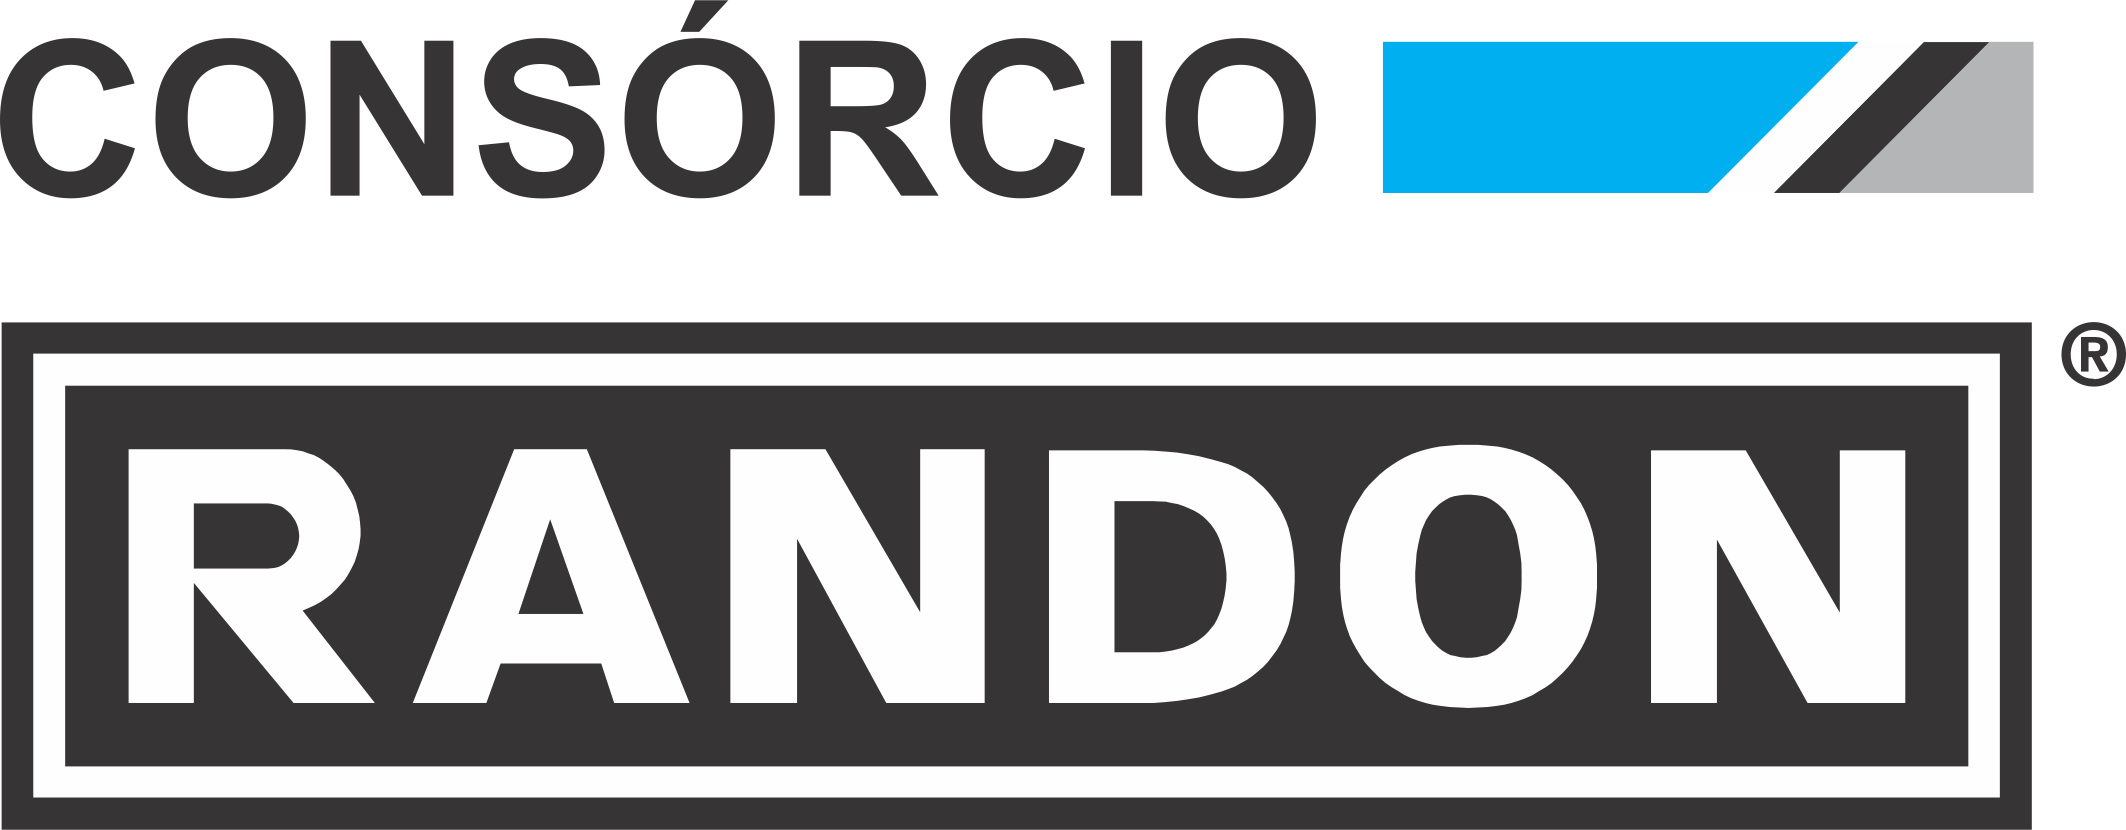 LogoConsorcioRandon